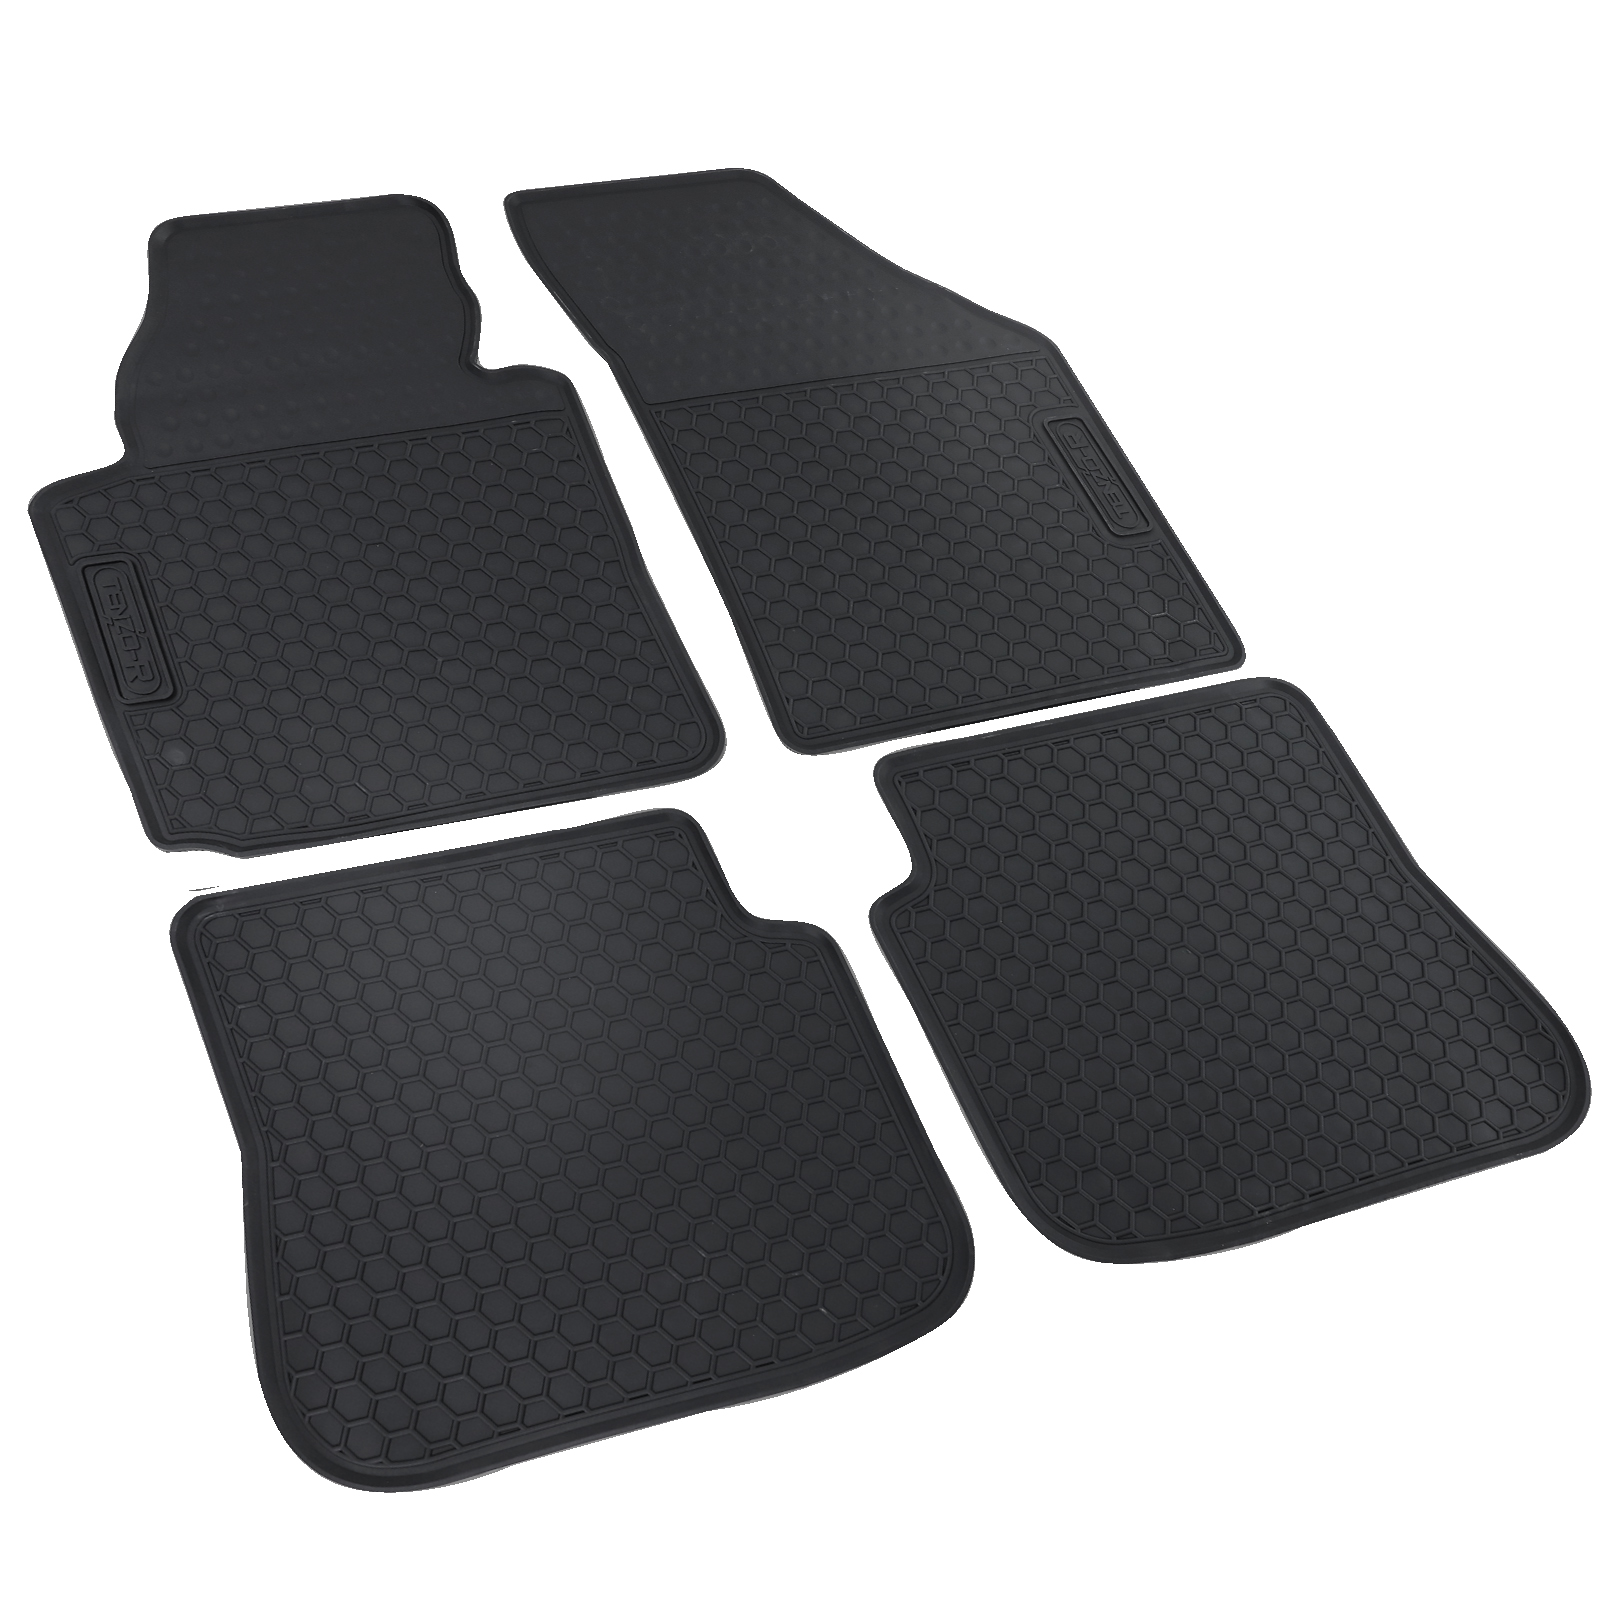 Auto Gummi Fußmatten Schwarz Premium Set für VW Caddy IV 15-20 kaufen